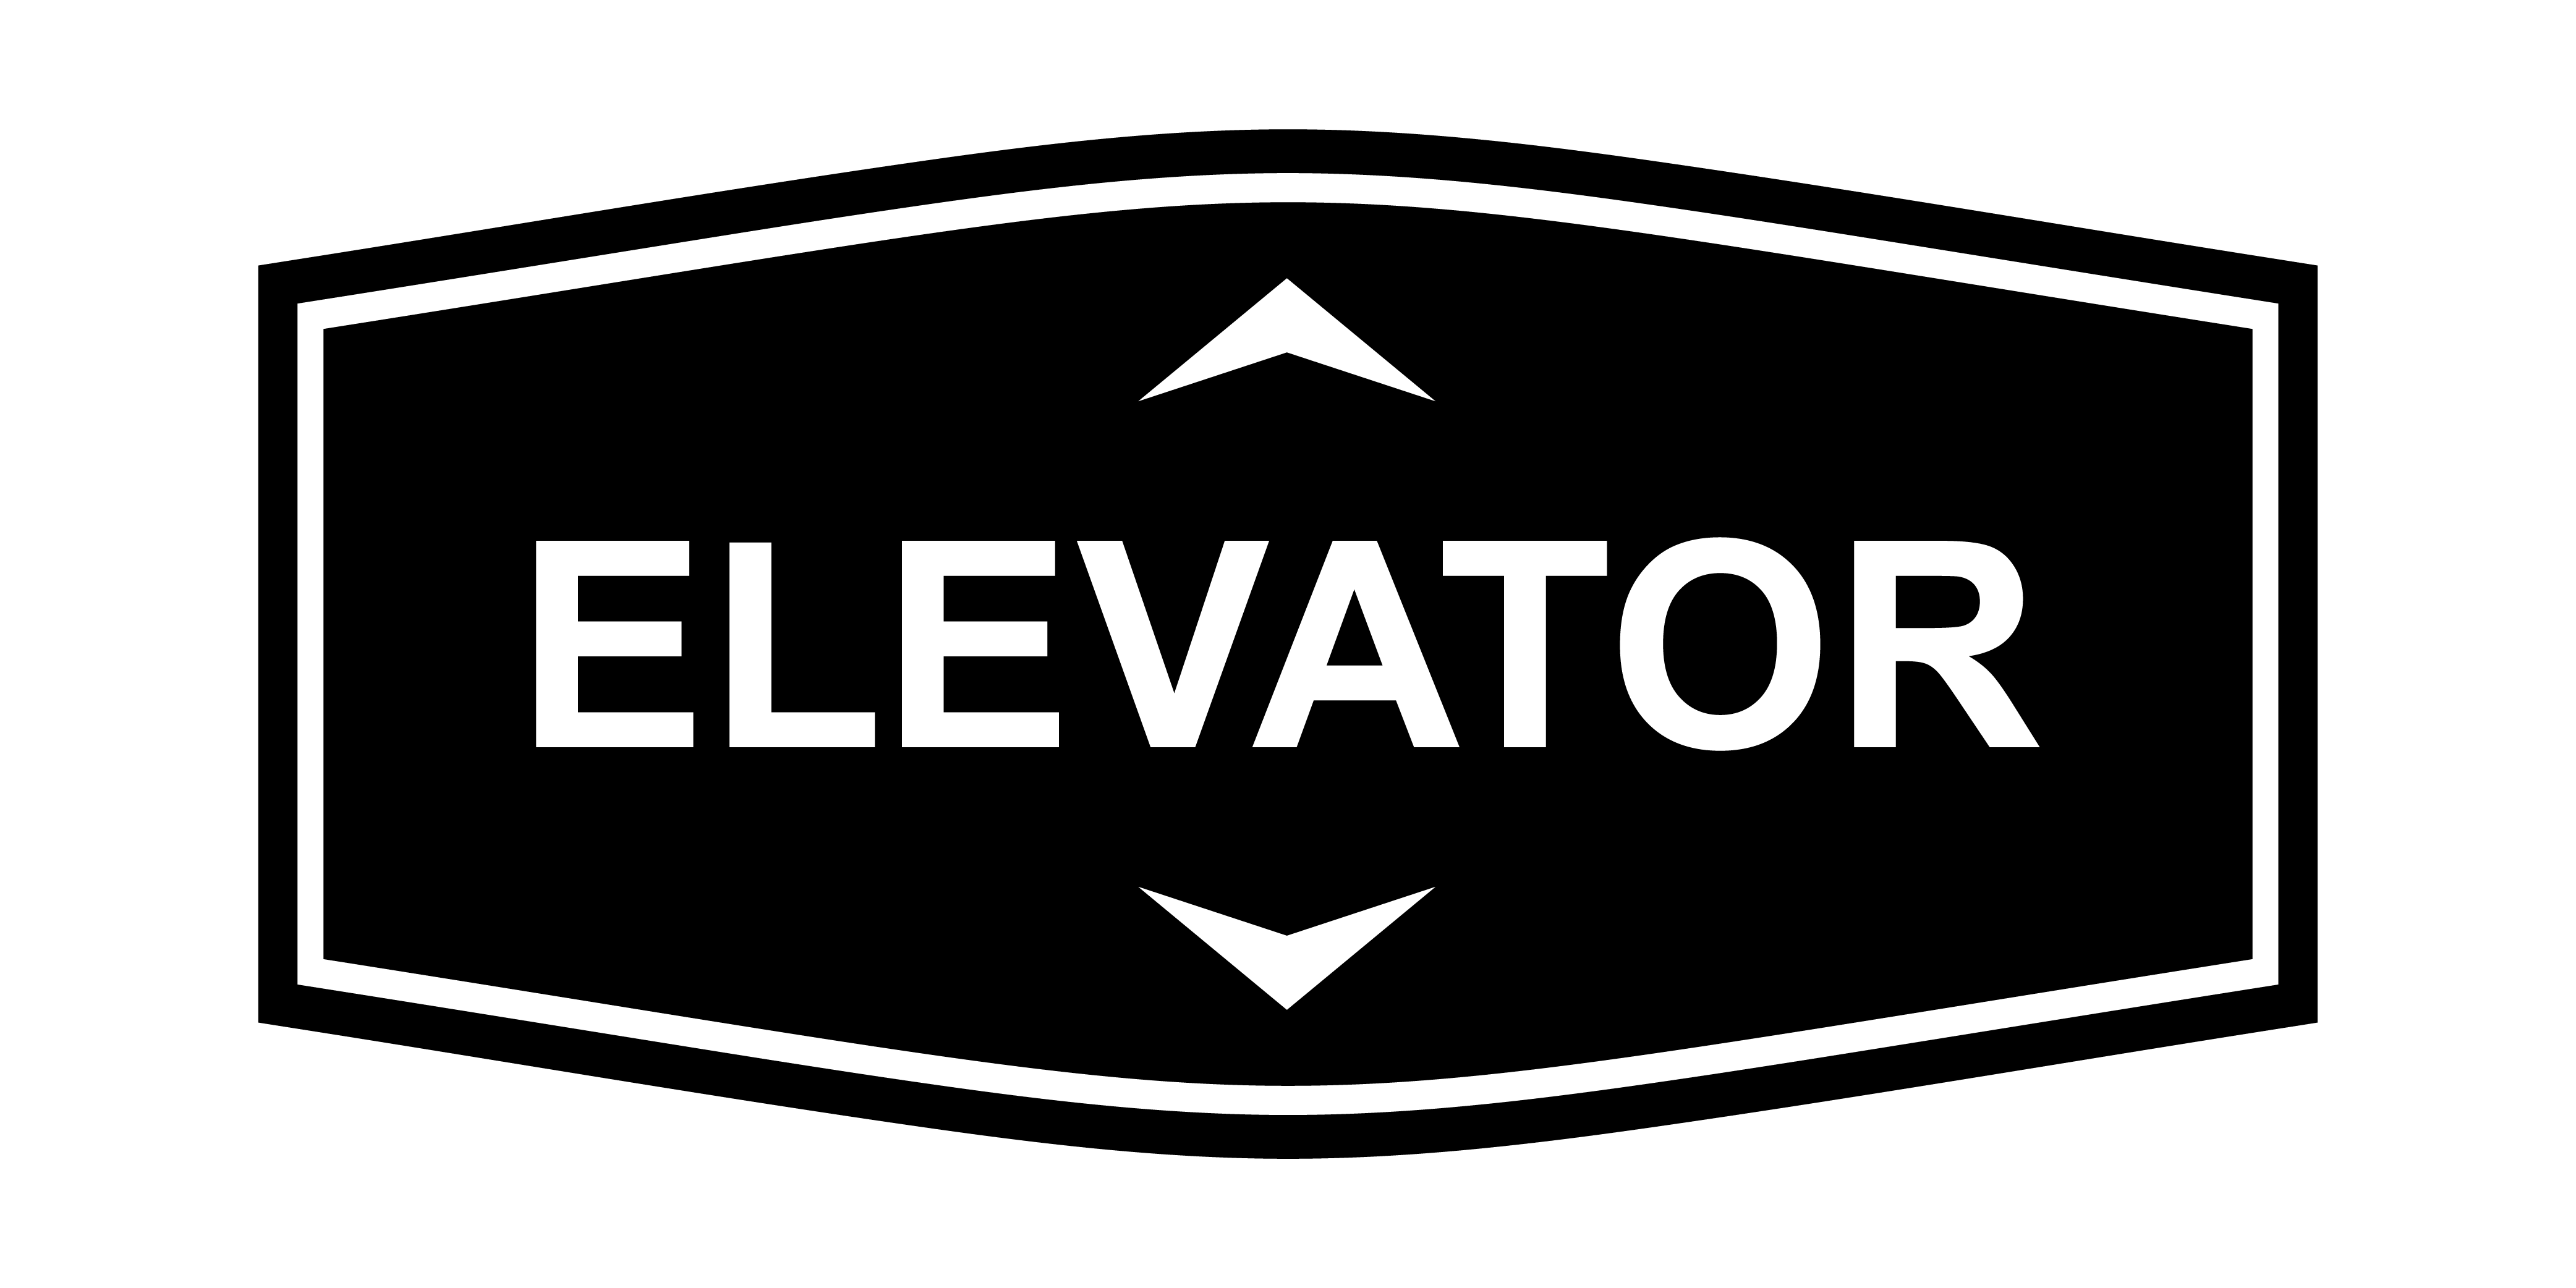 Fancy Elevator Up & Down Arrows Wall or Door Sign